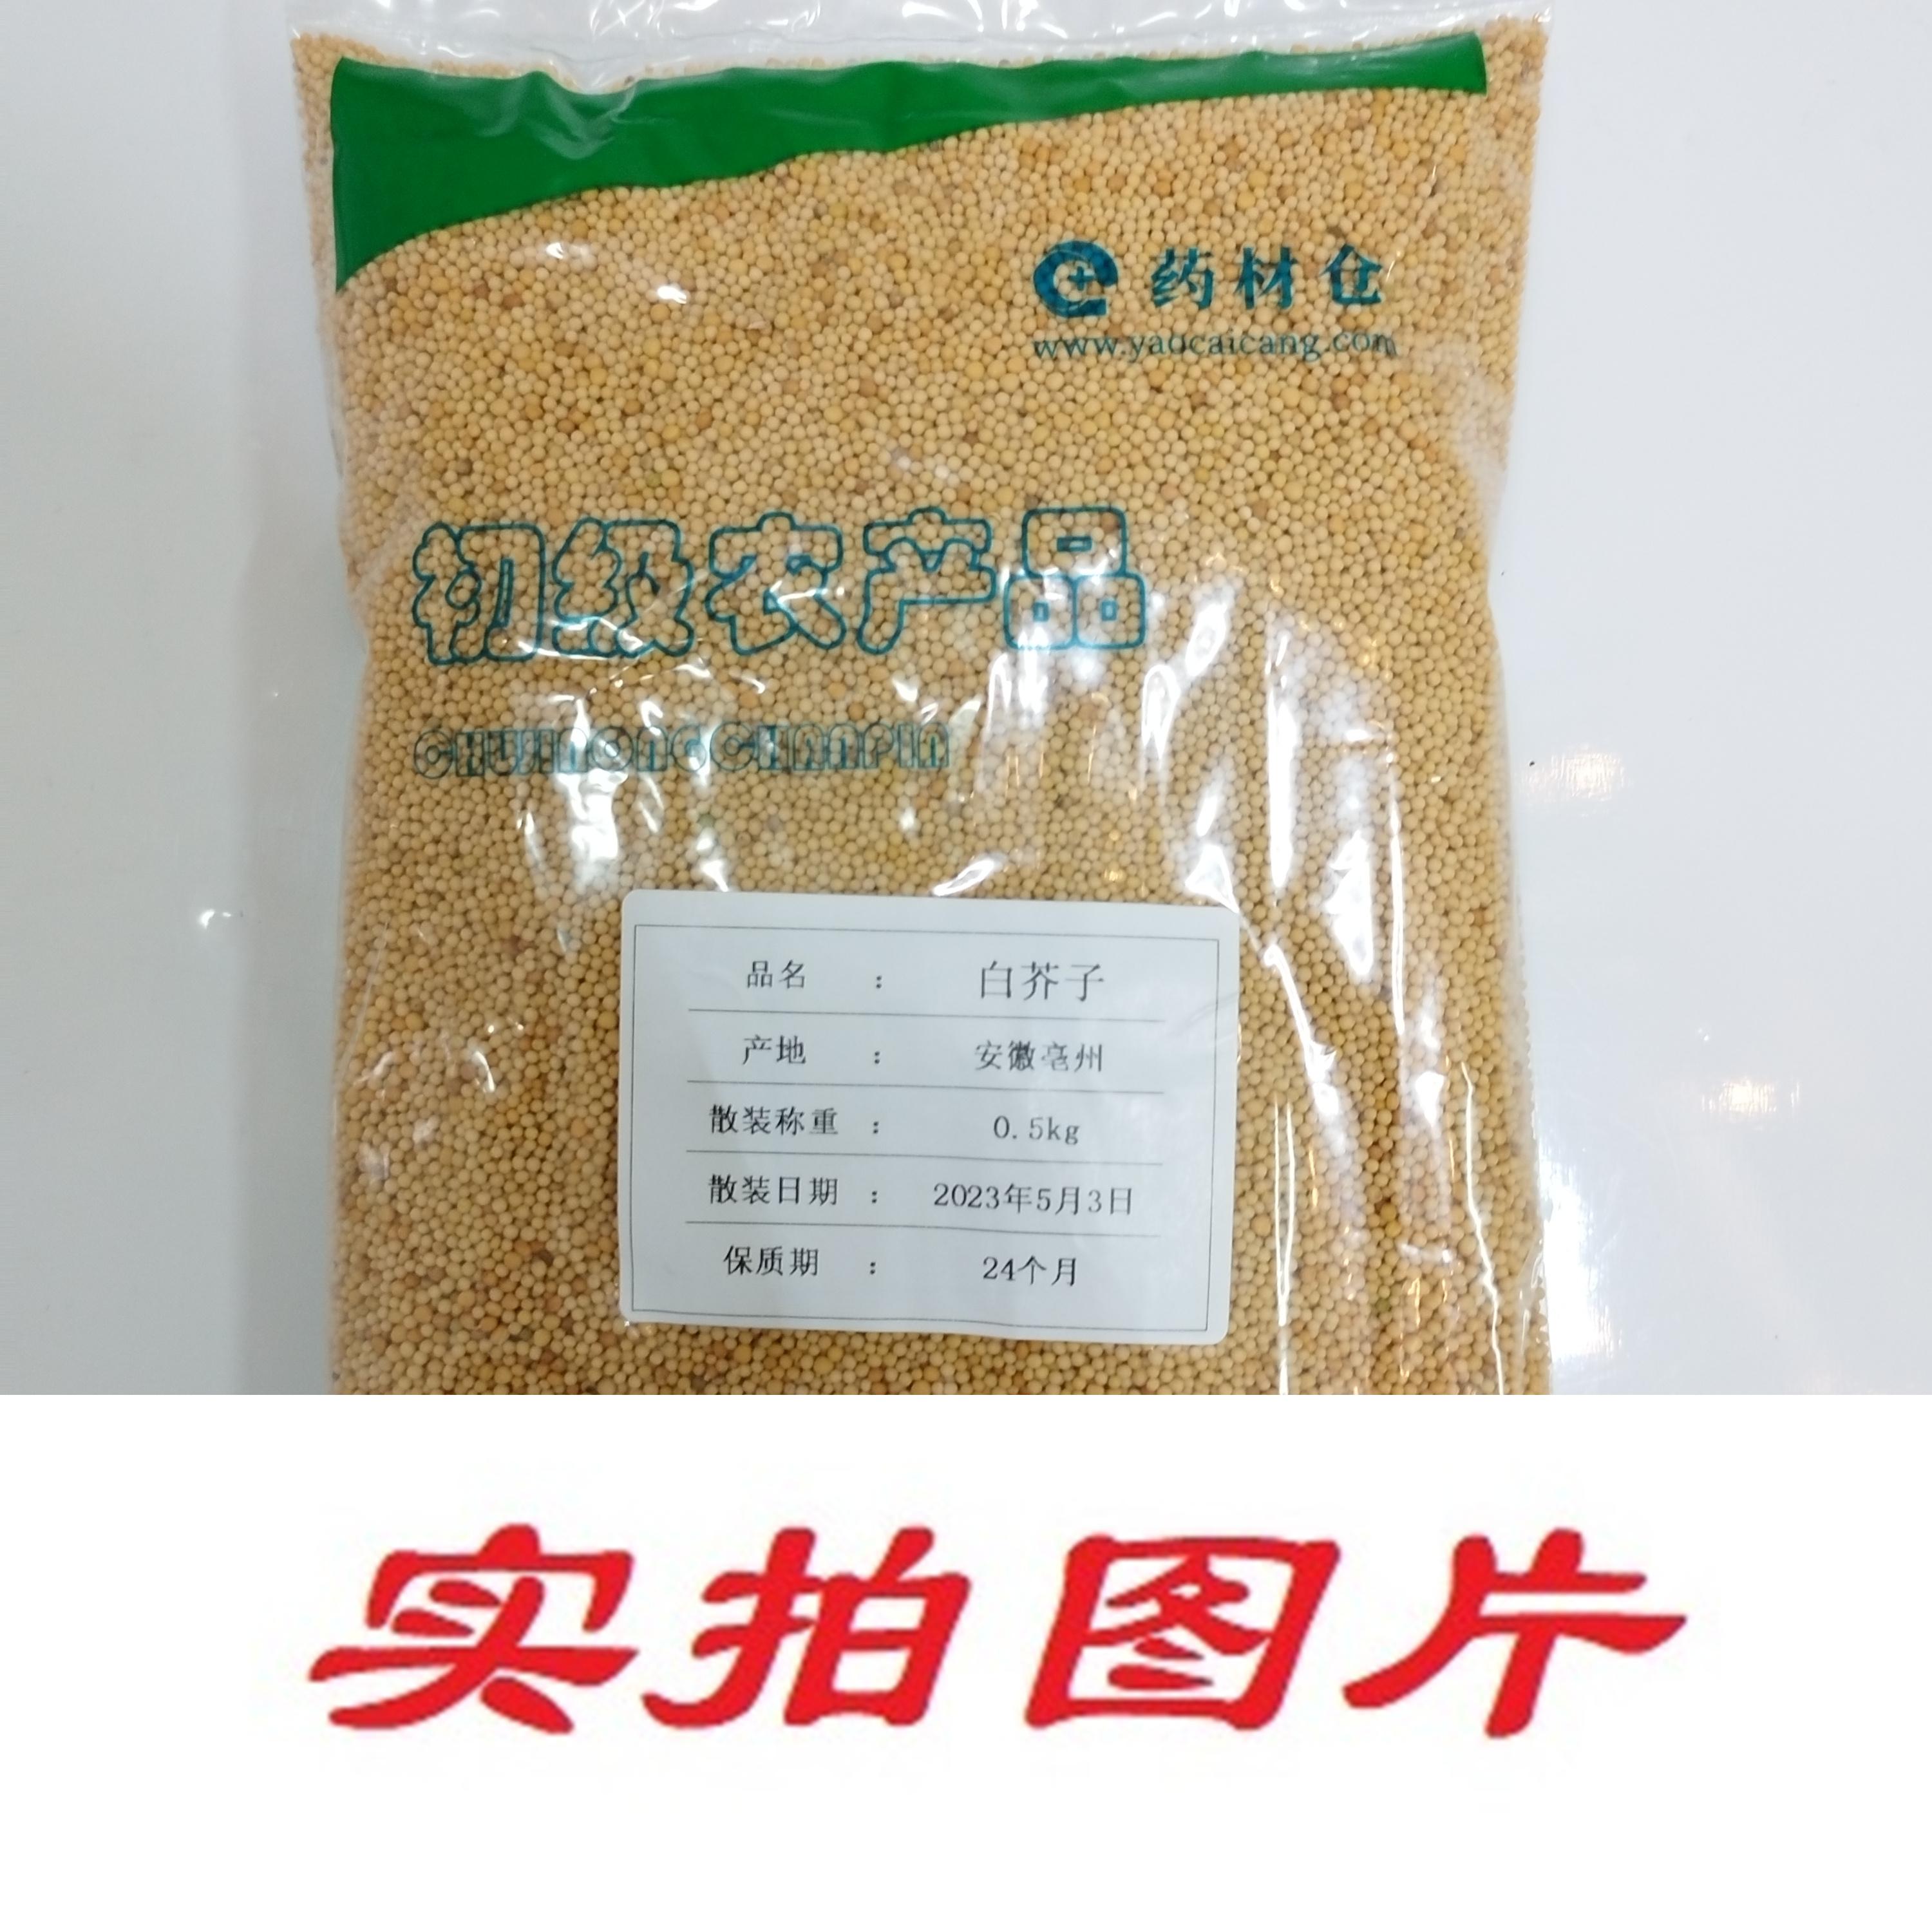 【】白芥子0.5kg-农副产品